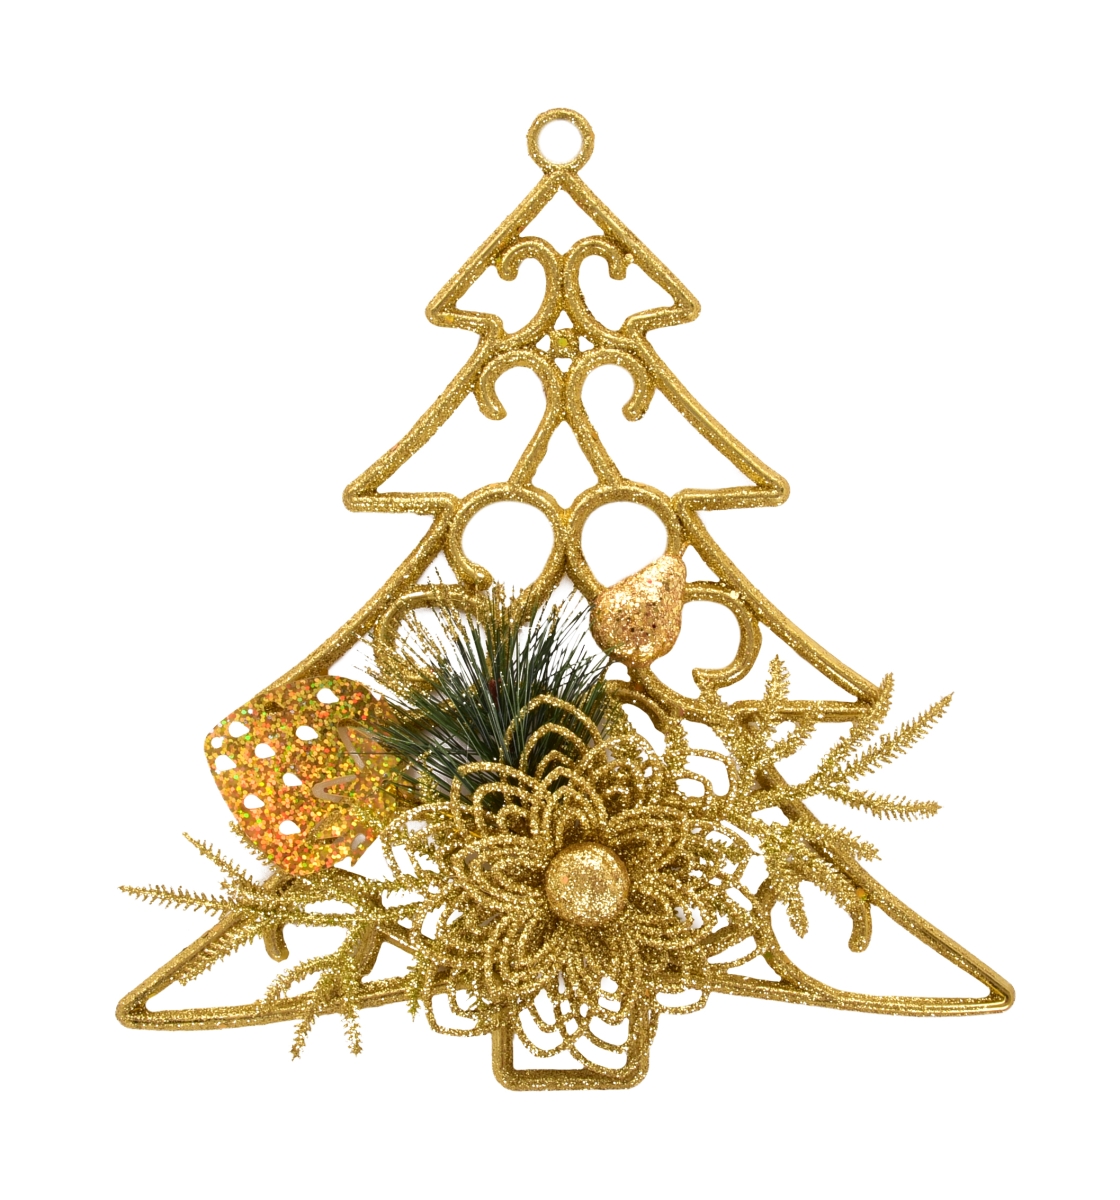 Fenyő formájú felakasztható karácsonyi dekoráció 25 cm - arany színű